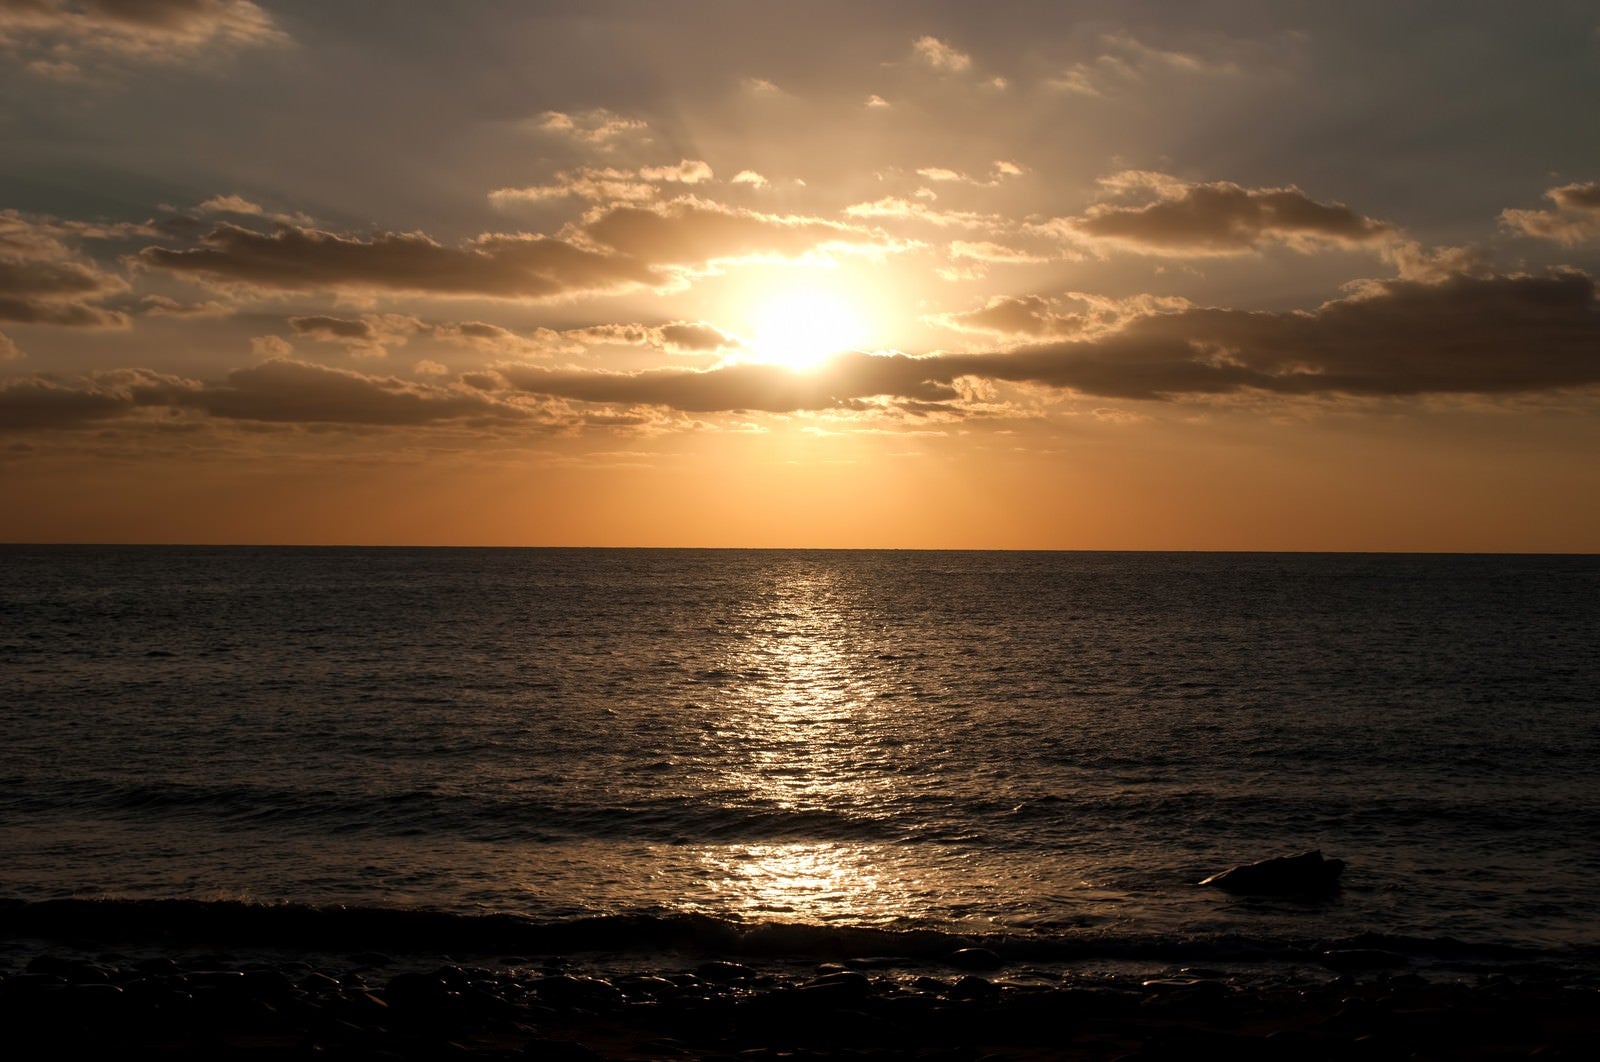 「屋久島の海と夕焼け」の写真